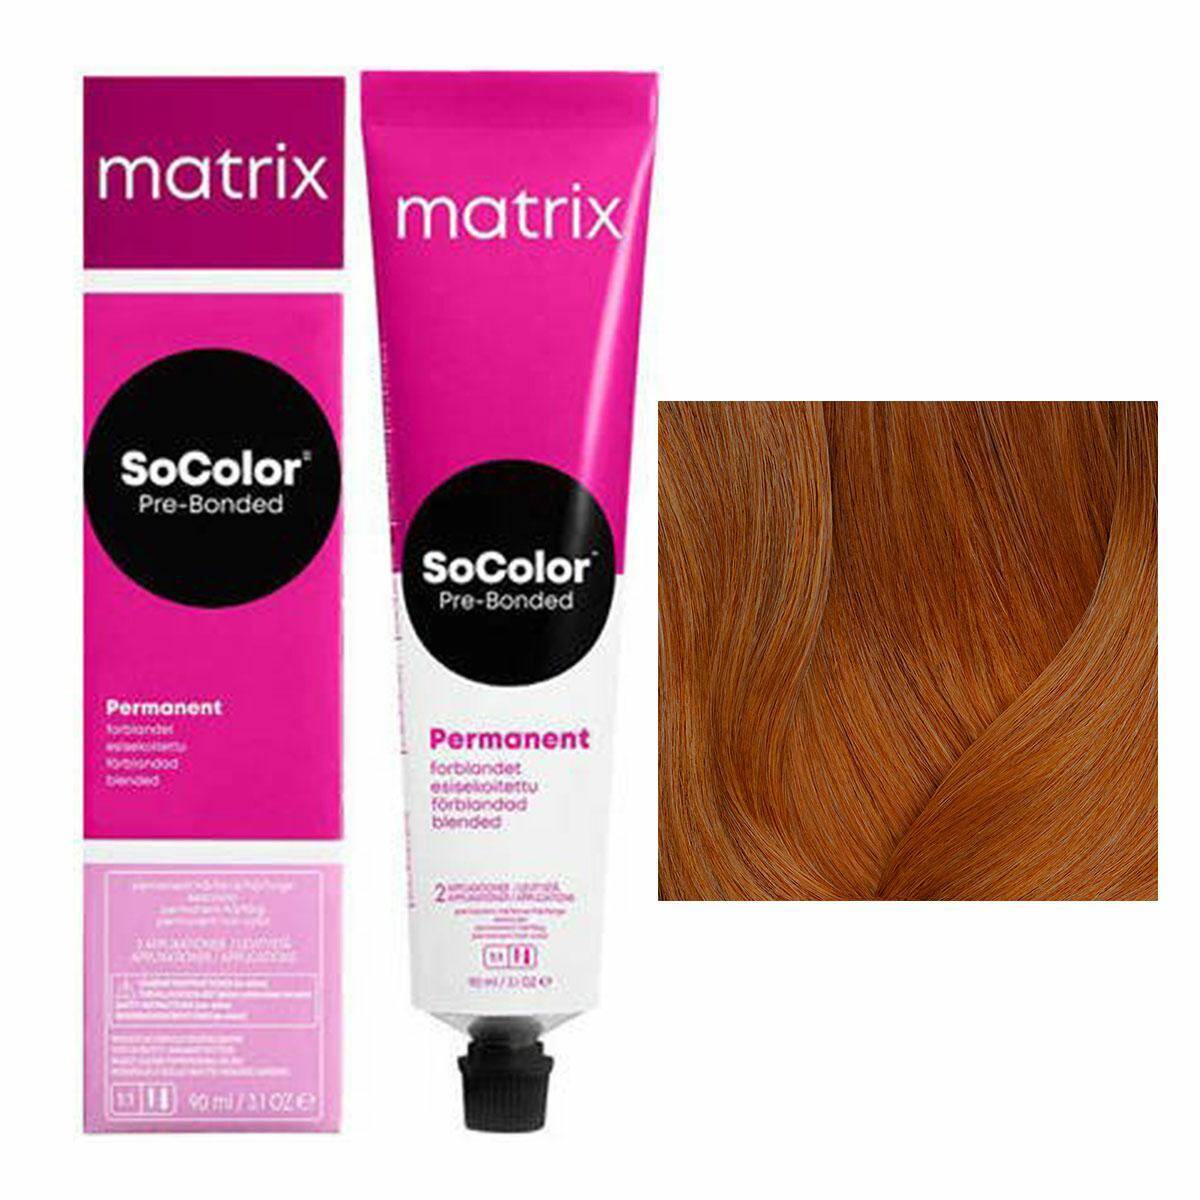 Matrix SoColor Pre-Bonded Farba do włosów - 7C Miedziany średni blond, trwała koloryzacja 90ml